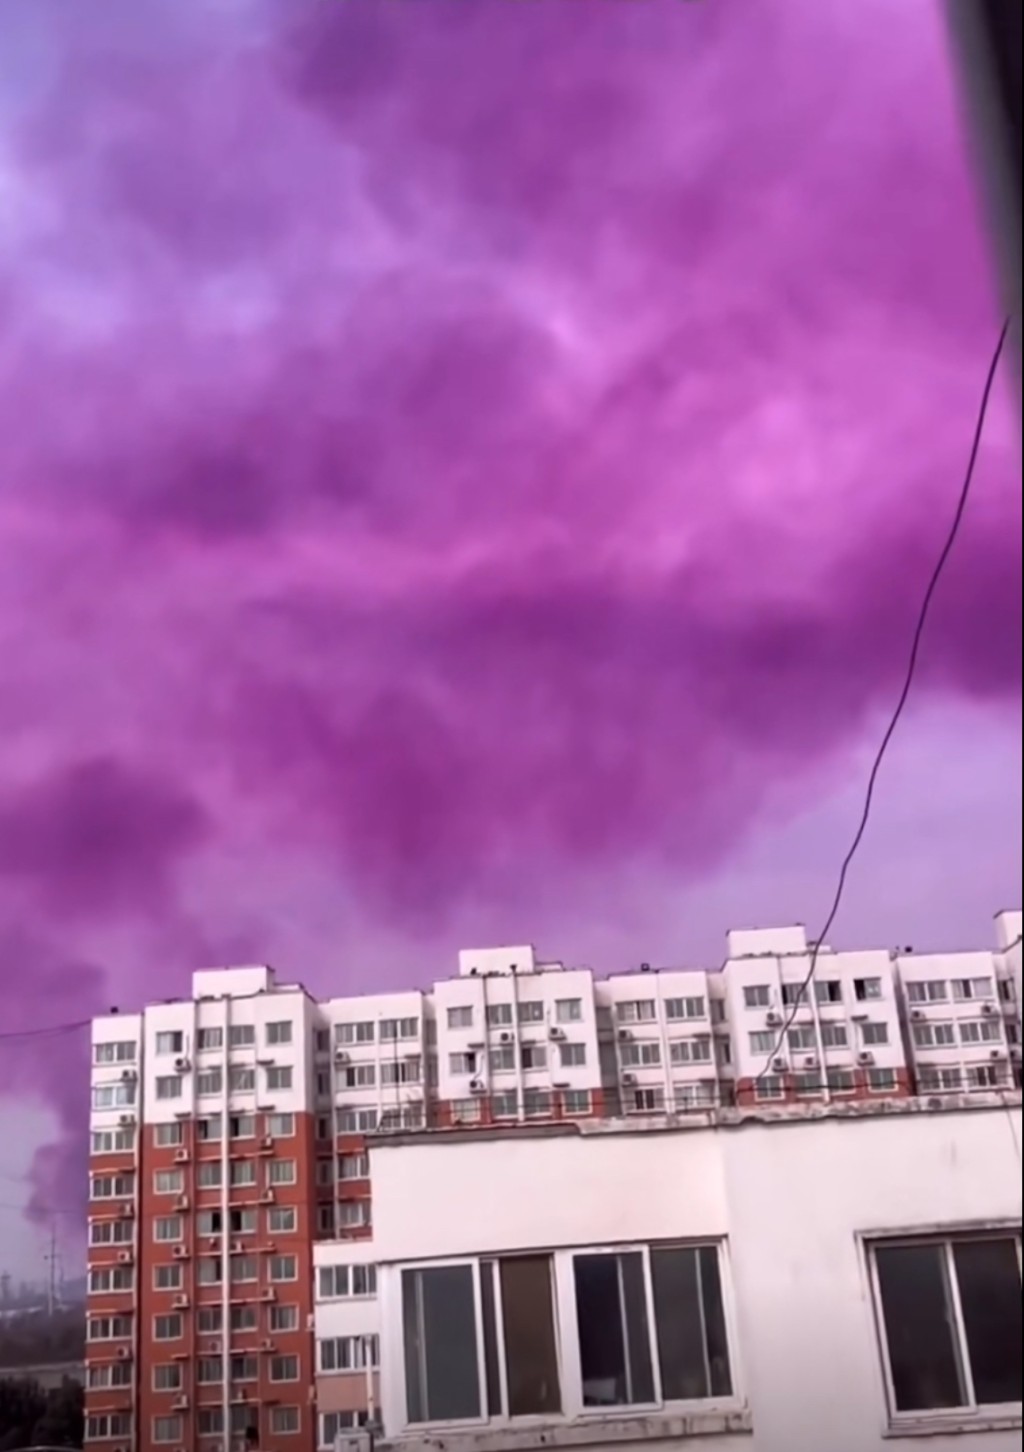 紫色烟雾随风飘散，将天空都染成了紫色。